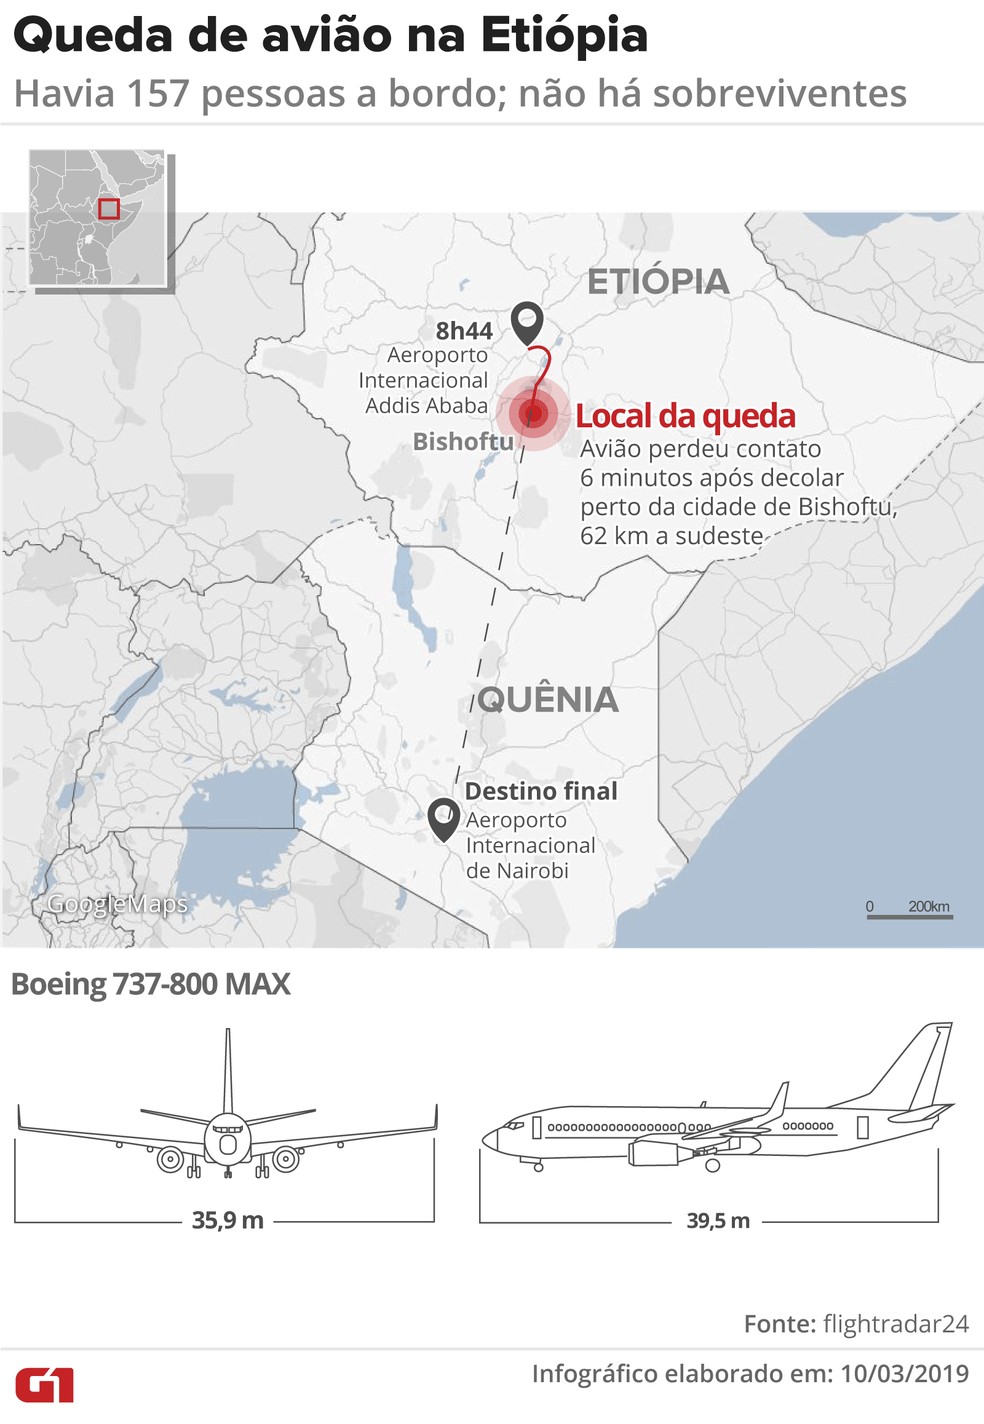 queda aviao etiopia - União Europeia restringe uso do Boeing 737 MAX após acidente na Etiópia; veja outros países